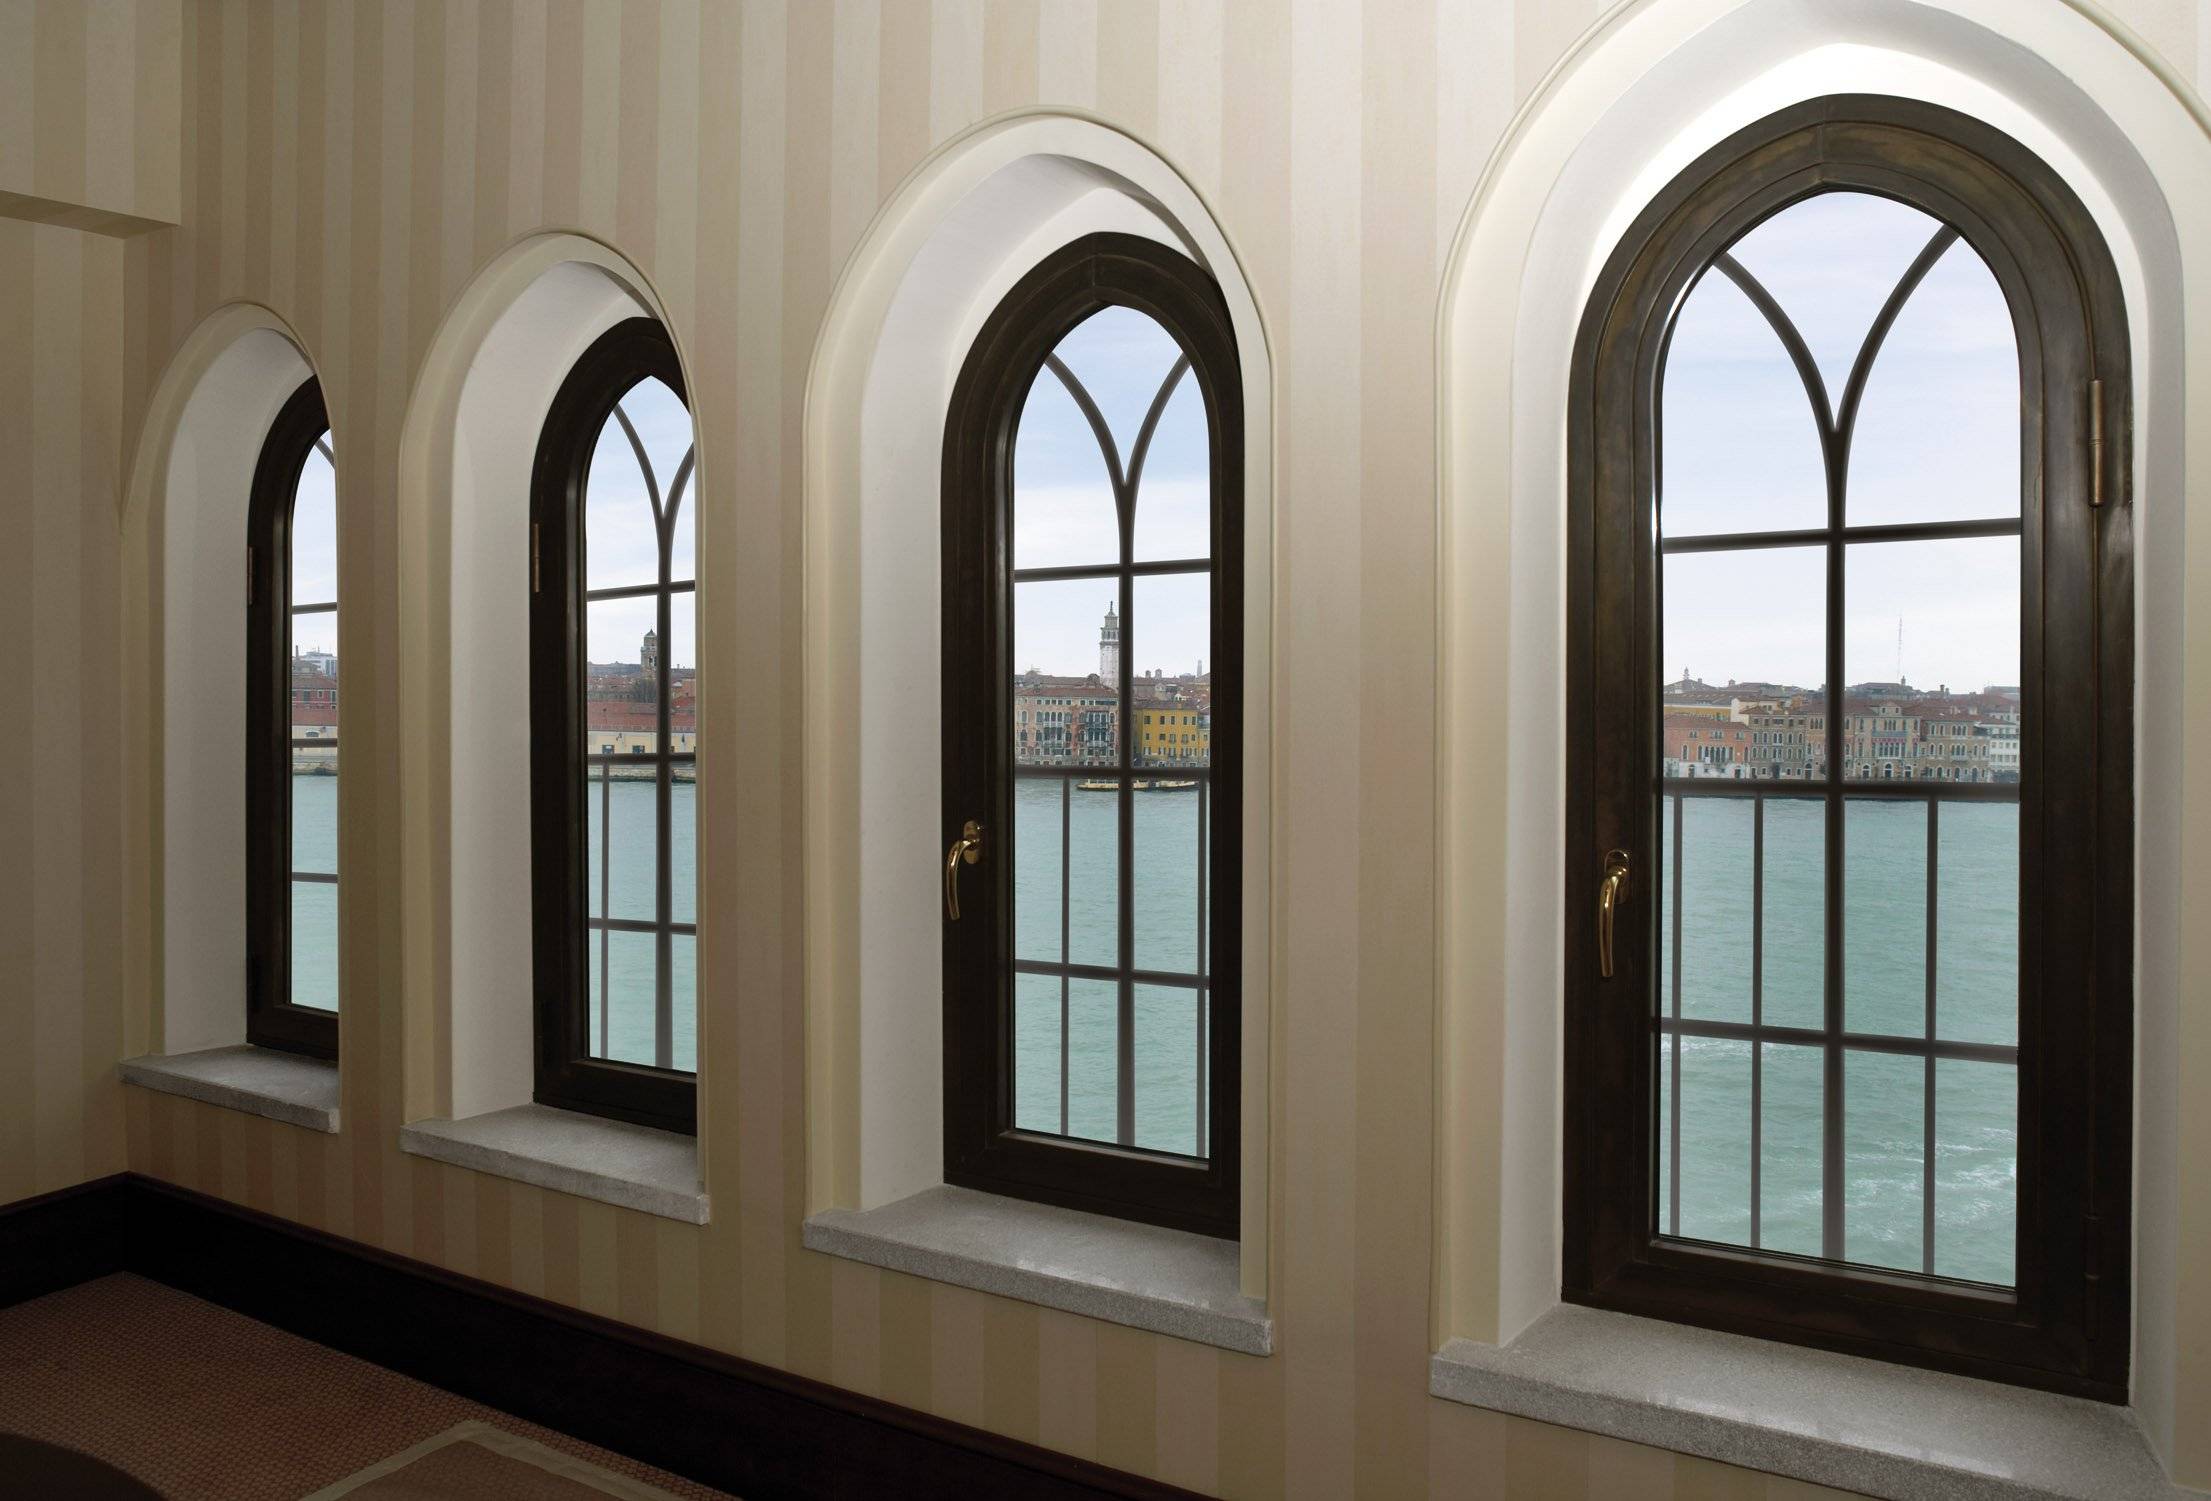 Арочные окна в интерьере: варианты отделки и оформления, как подобрать шторы